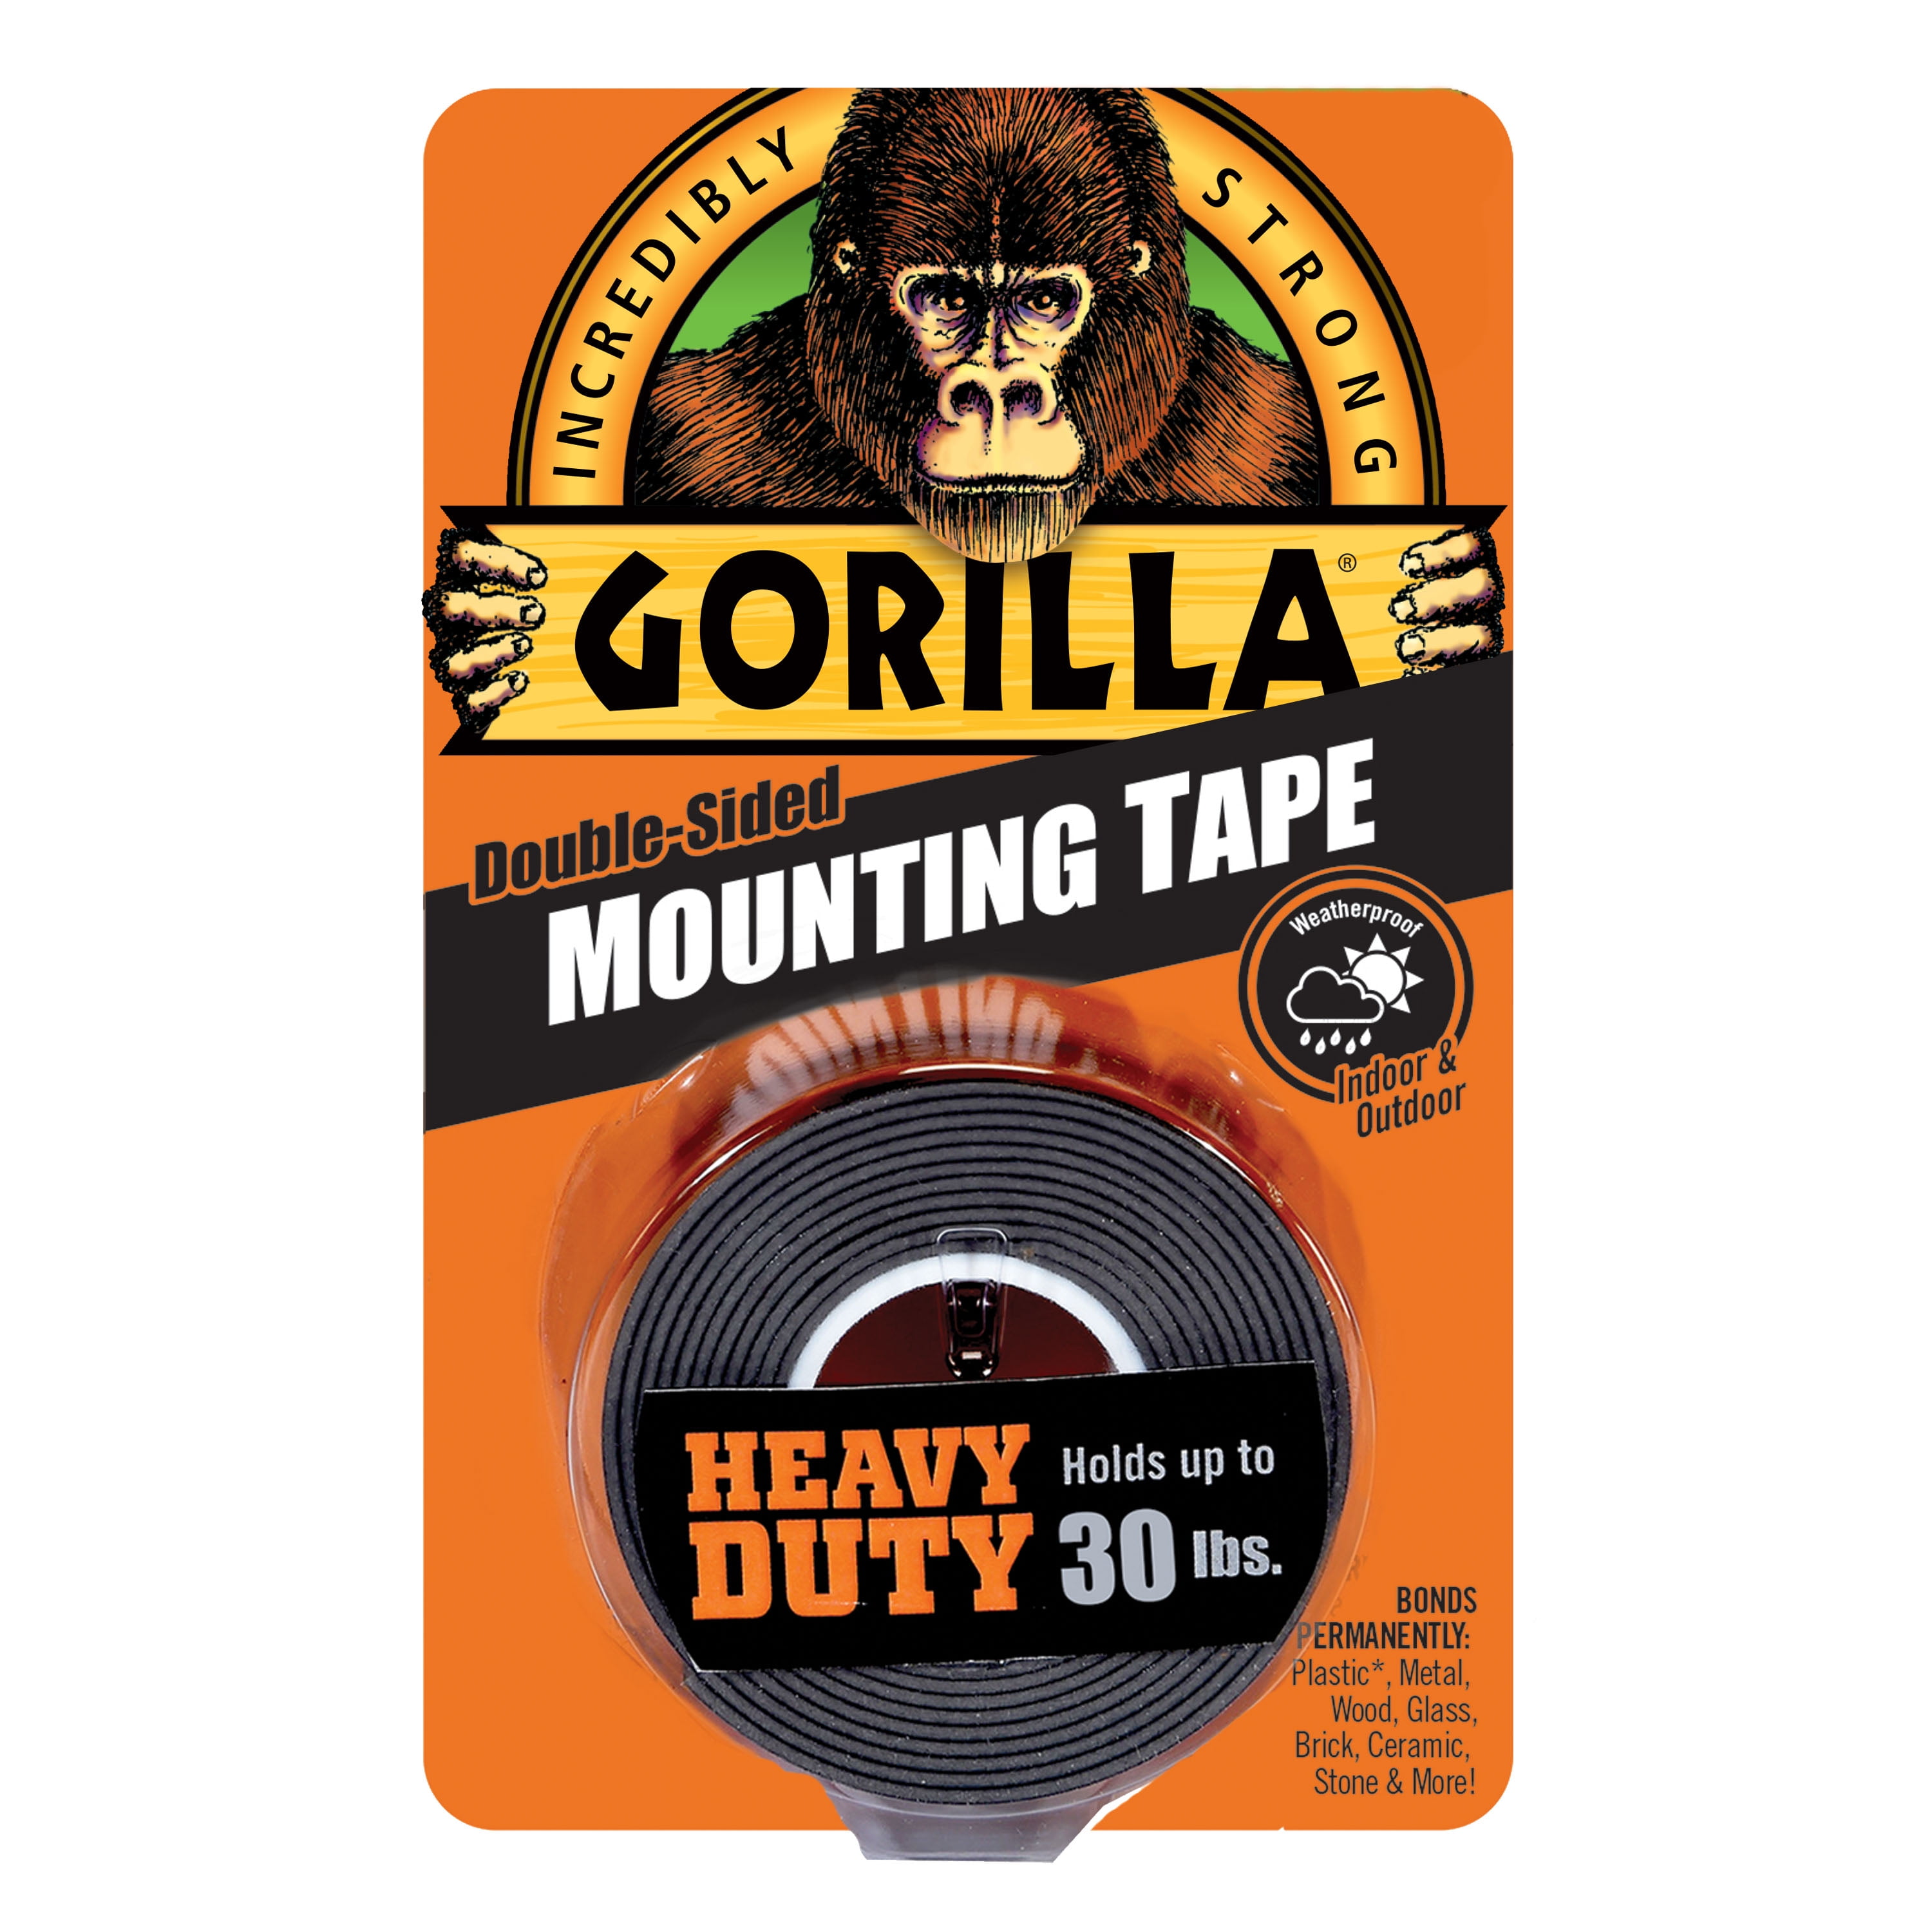 Gorilla High Strength Tape 10 ft.